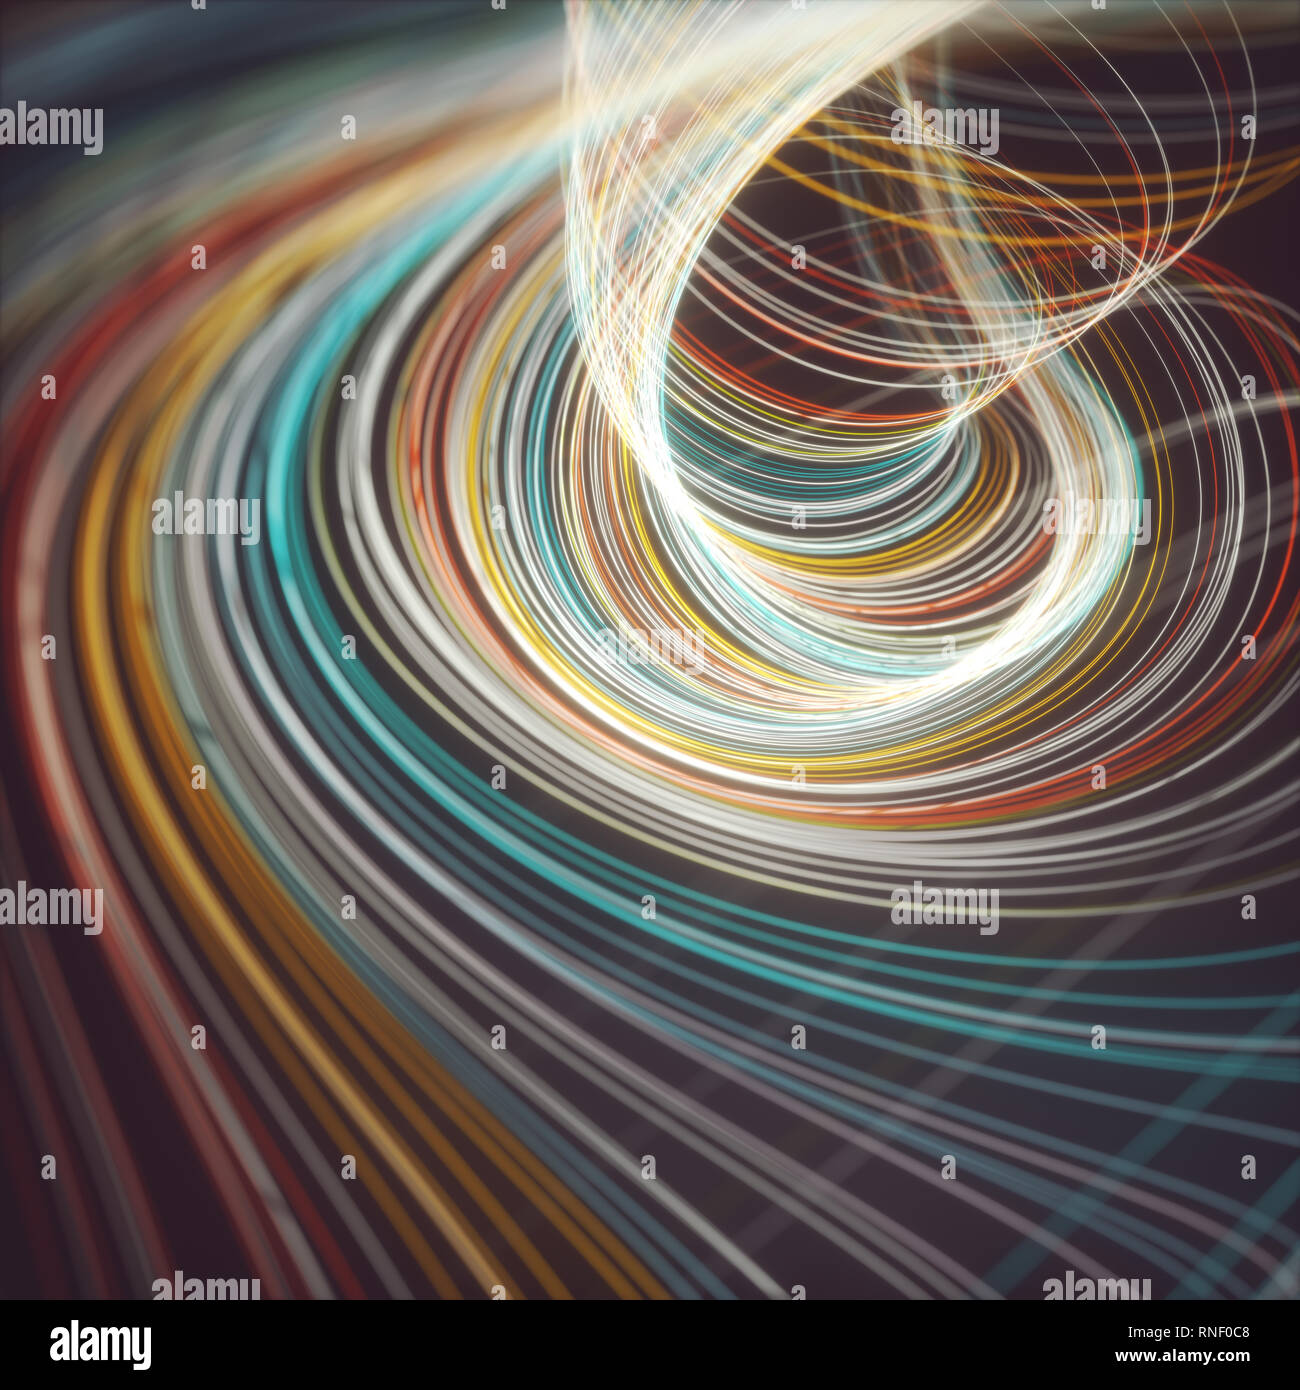 Imagen abstracta de líneas coloreadas en movimiento circular como un tornado. Ilustración 3D fondo de colores. Foto de stock